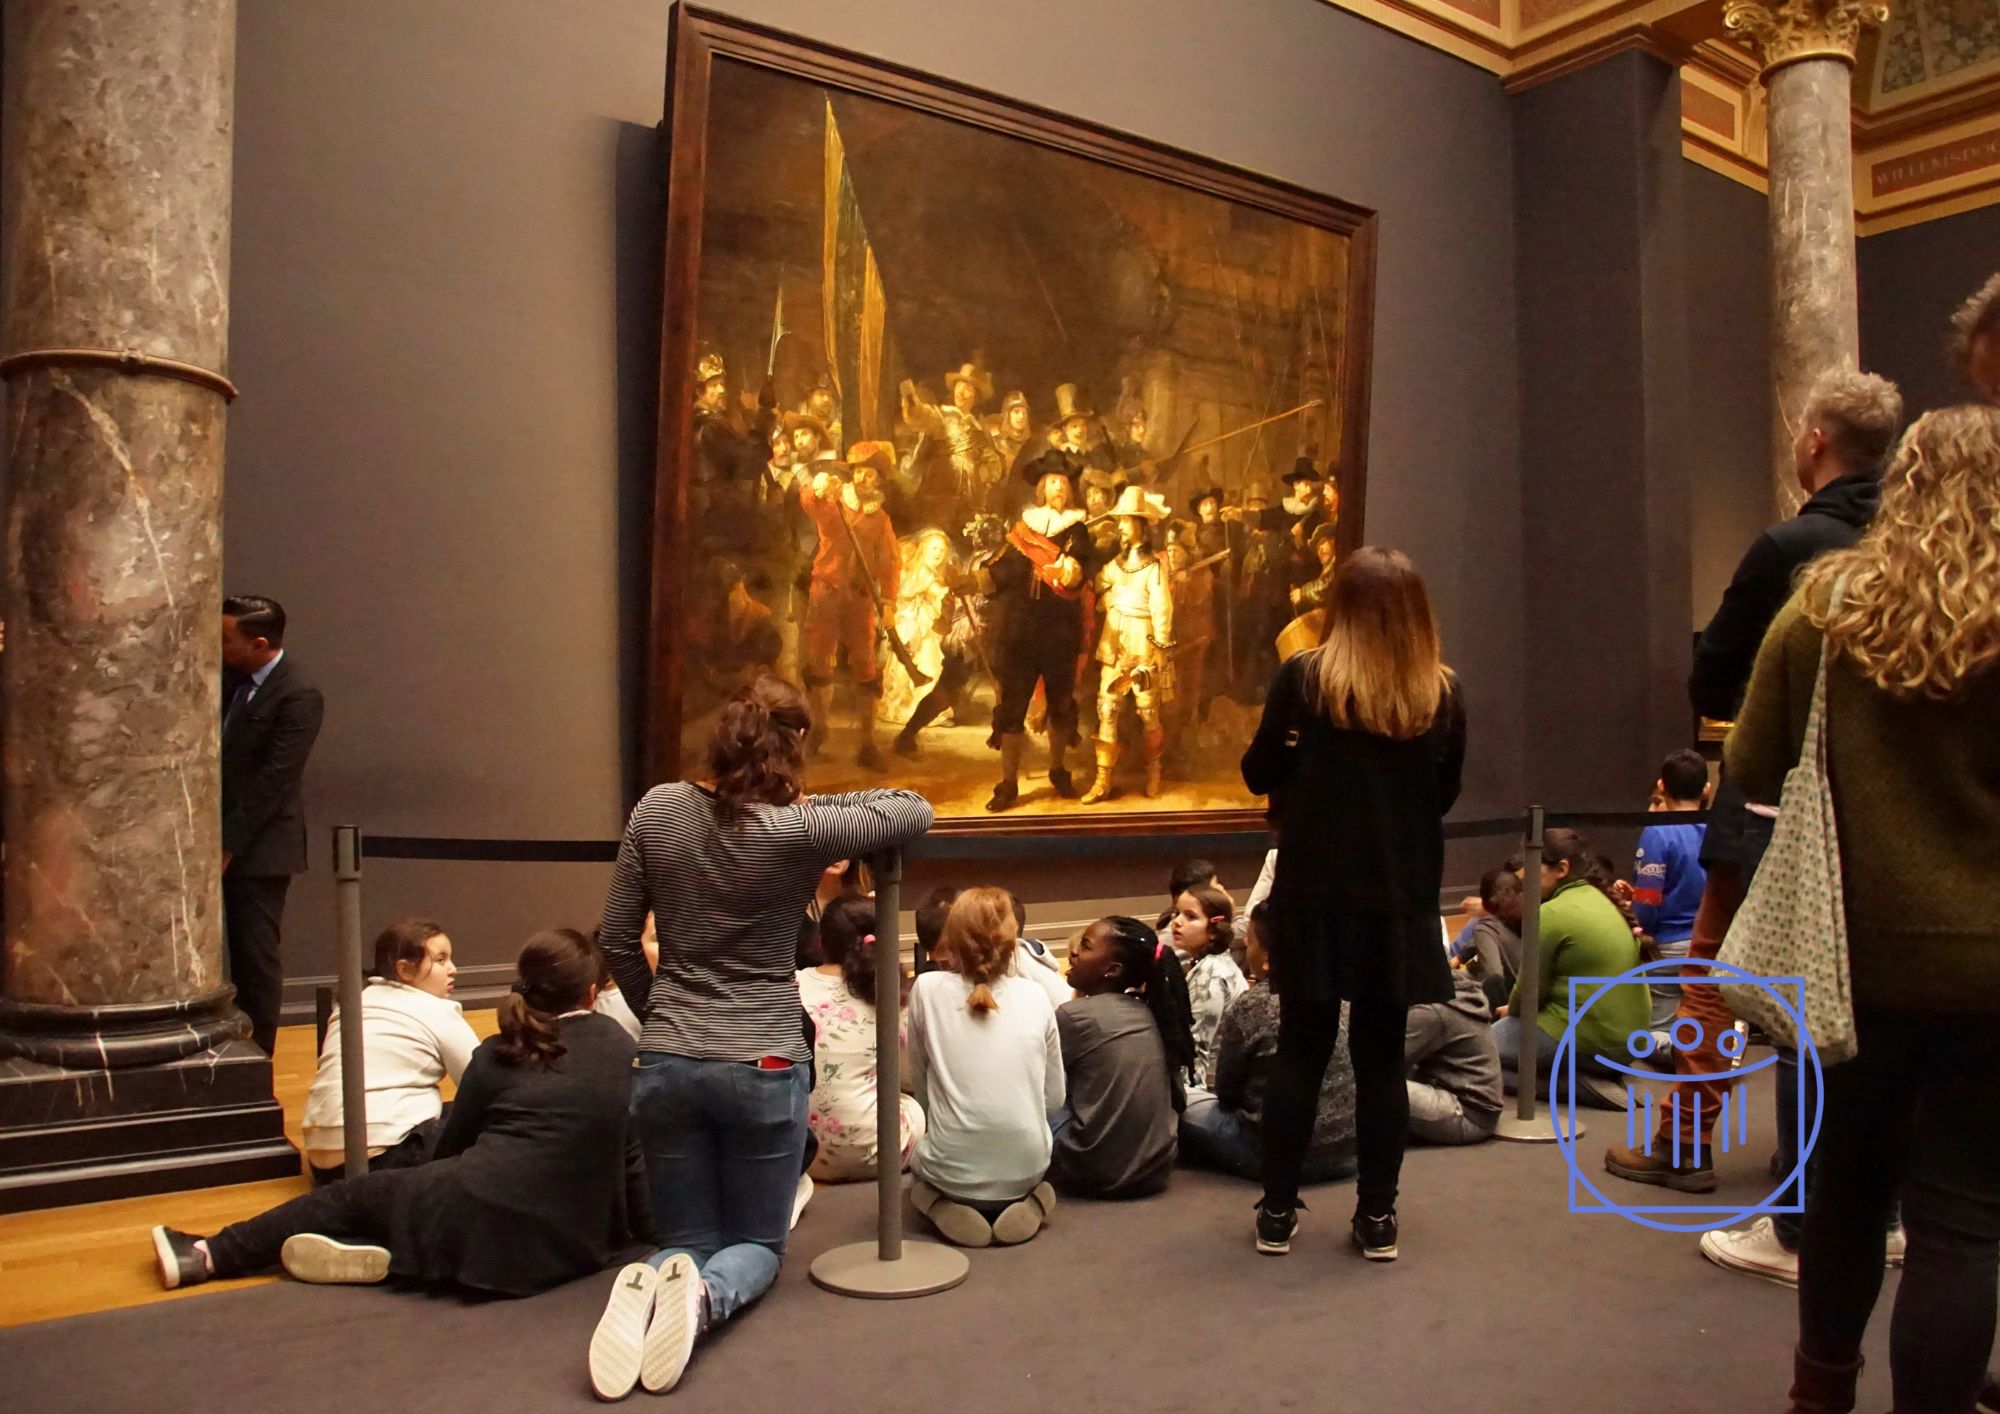 Uczniowie klasy turystycznej, oglądając słynny obraz, rozwijają umiejętności obserwacji, analizy i interpretacji dzieła sztuki